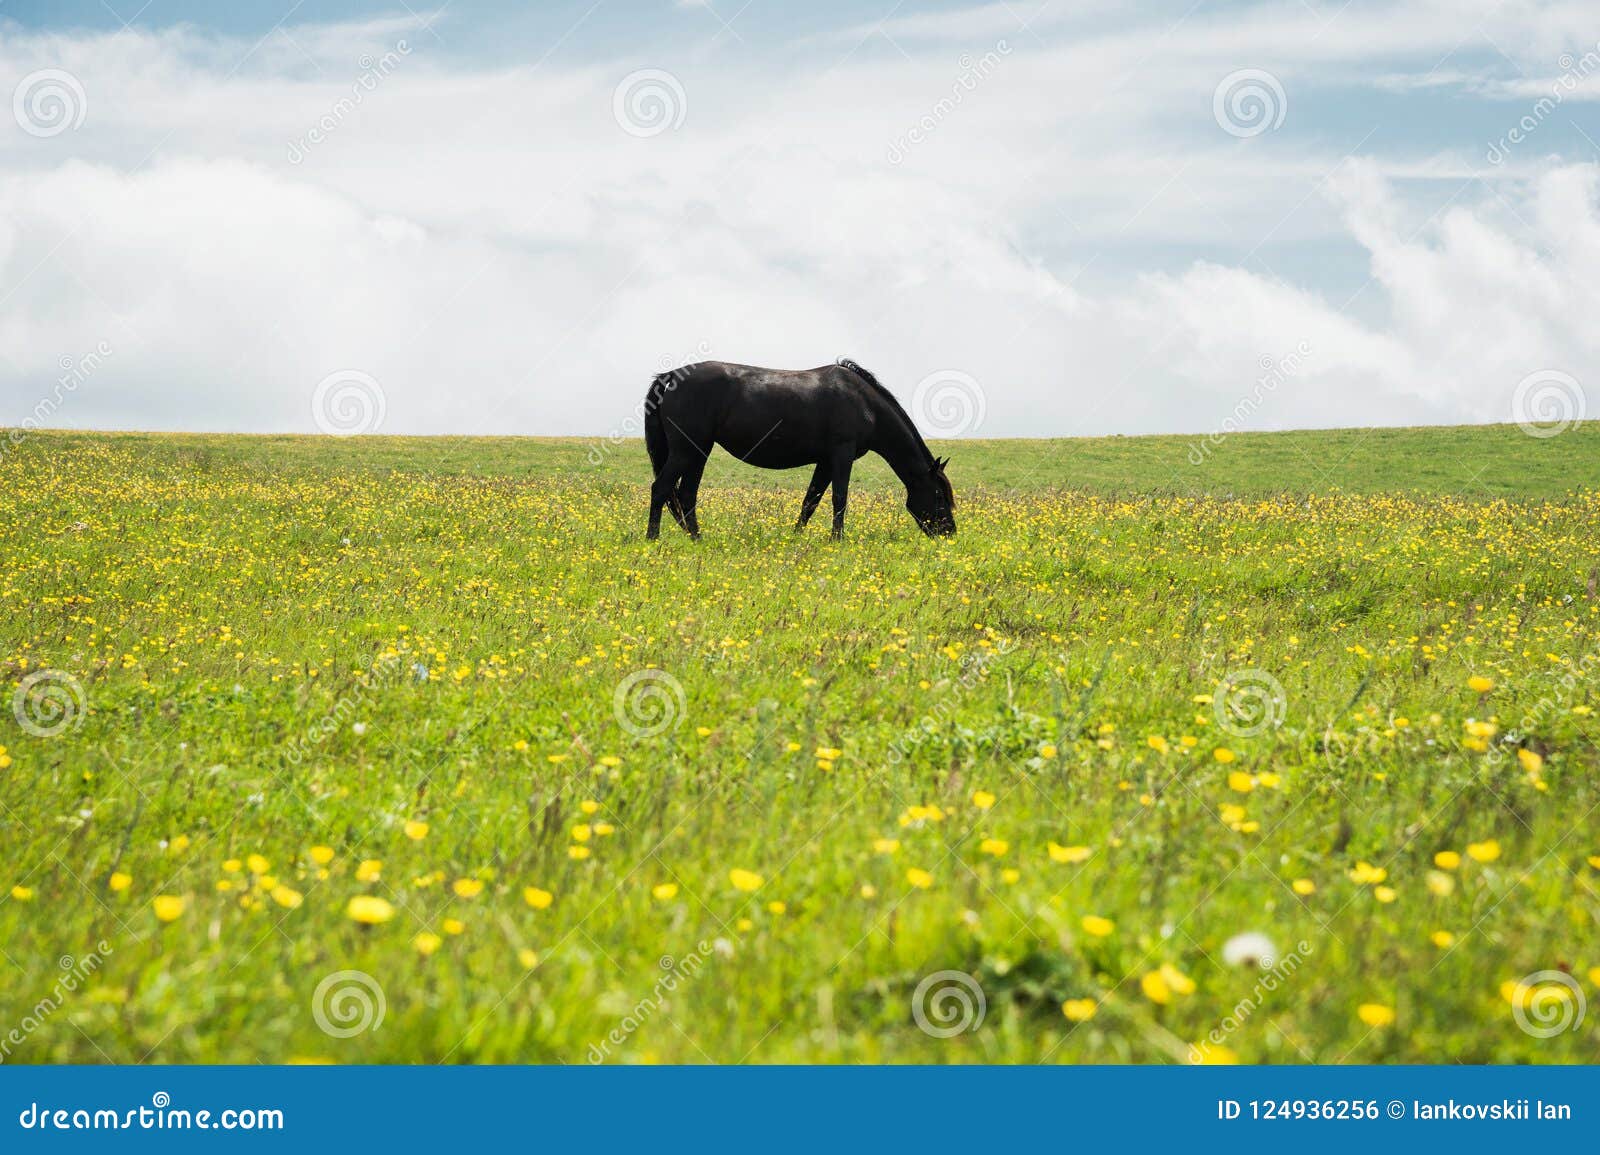 Đây là một chú ngựa đen quyến rũ, với bộ lông mượt mà và chân thon dài. Hãy đến xem hình ảnh của chú ta, khiến bạn đắm chìm trong sự đẹp đẽ và sức mạnh của loài ngựa.